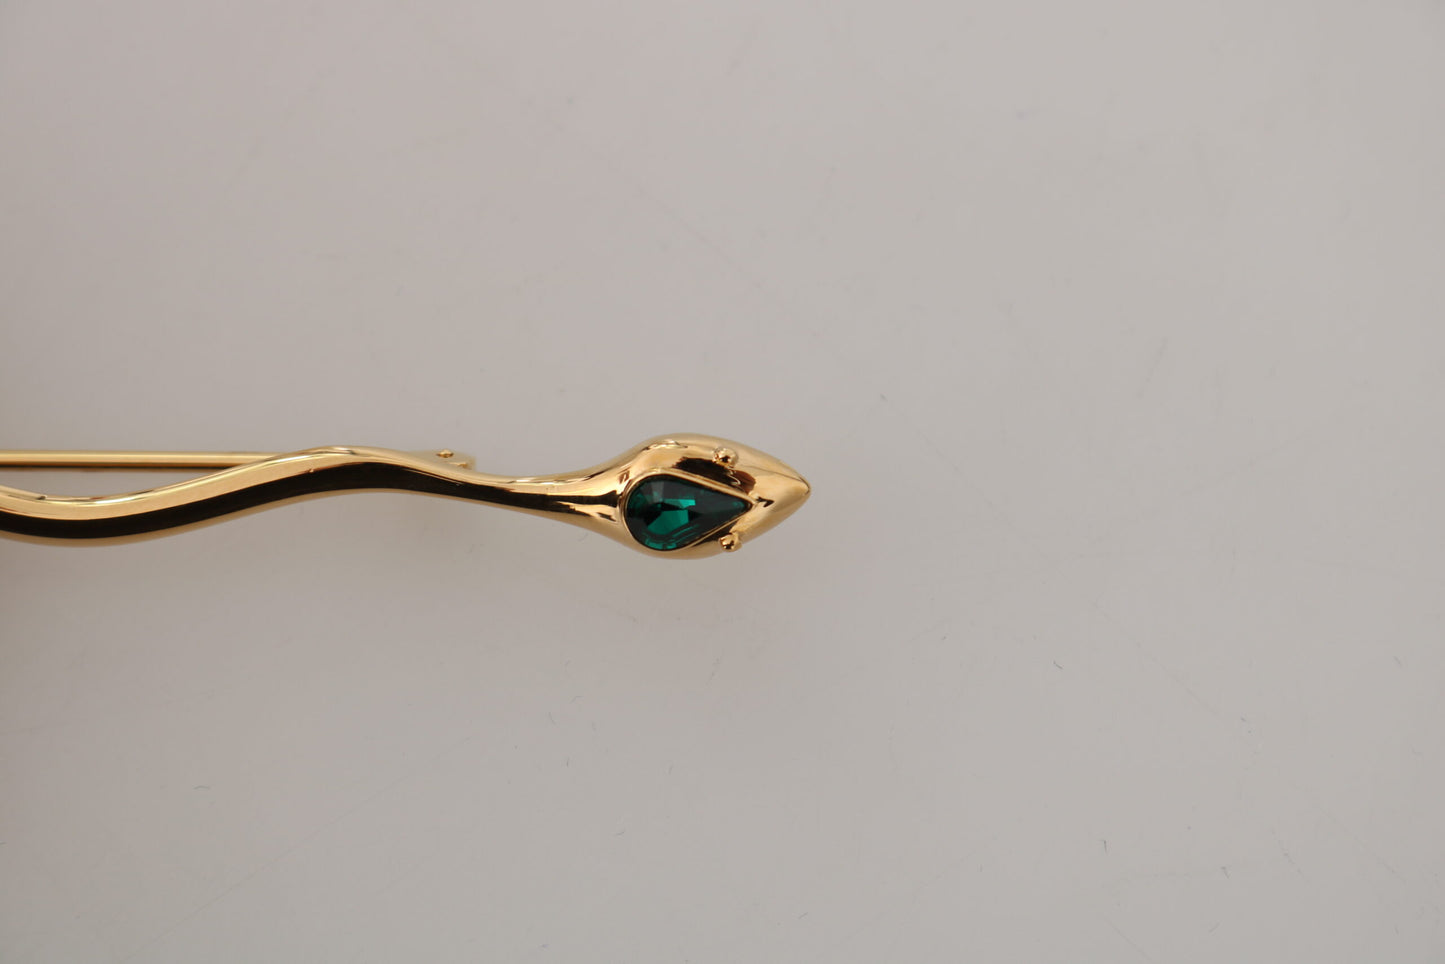 Elegant Gold & Crystal Brooch Pin